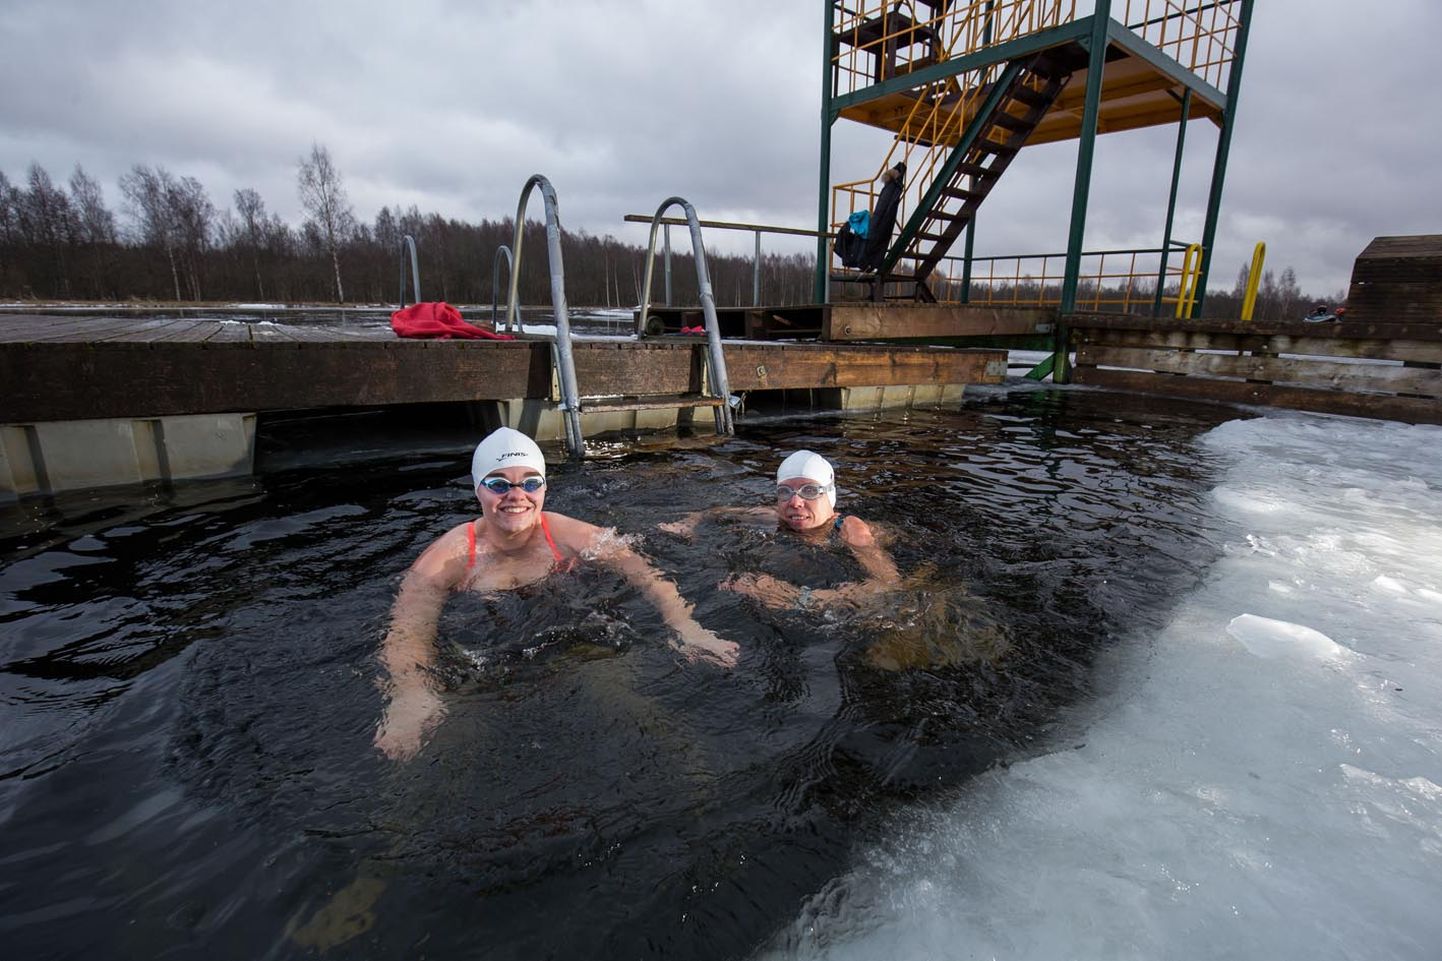 Taliujumise maailmakarika etapil Valgevenes olnud korraldajate apsakaid talusid Merle Vantsi (paremal) kogenud sportlasena ja Heli Hiiemäe noore ujujana erinevalt.